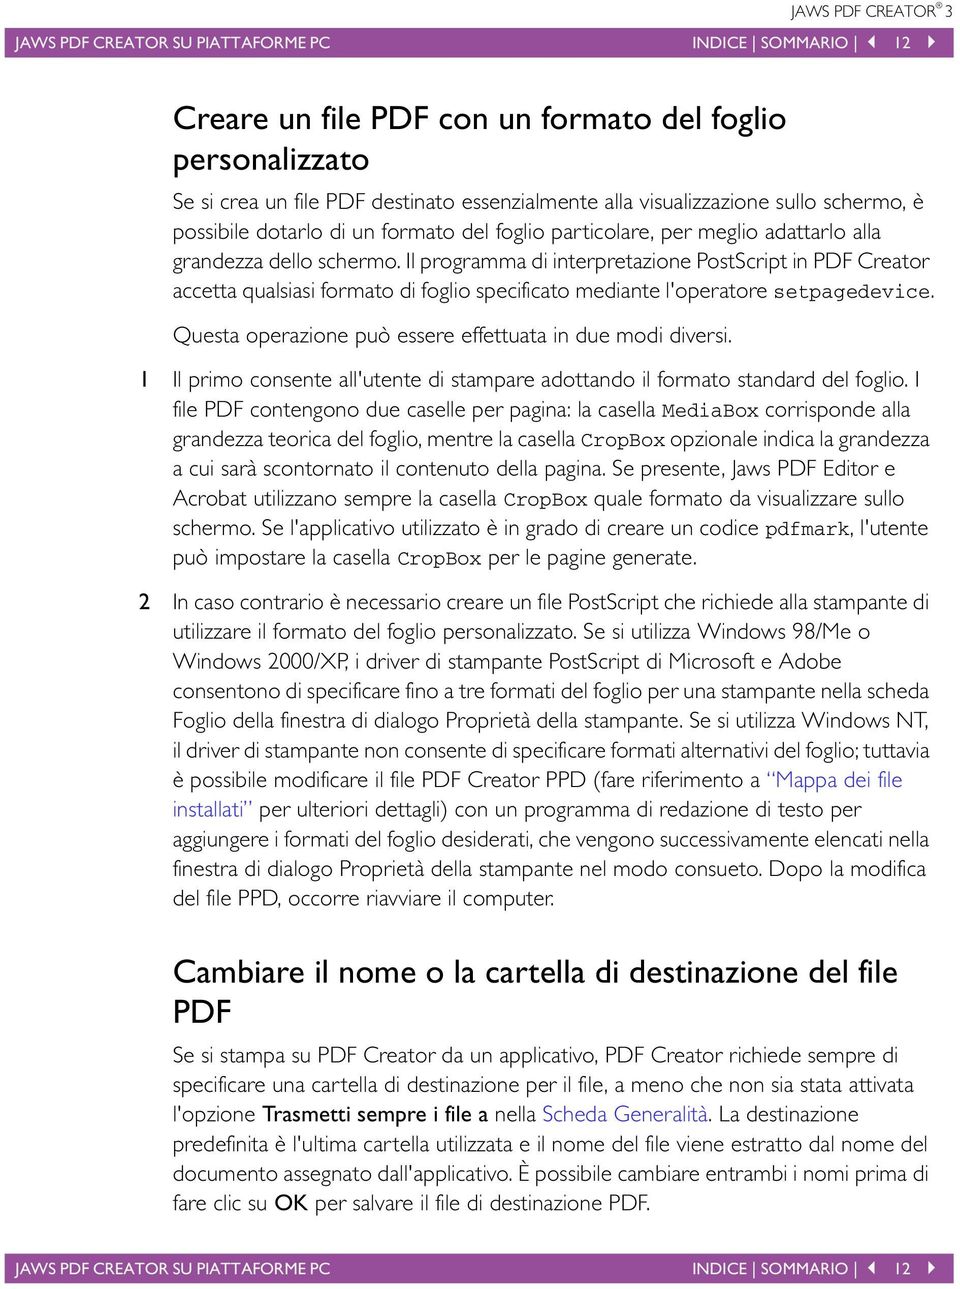 Il programma di interpretazione PostScript in PDF Creator accetta qualsiasi formato di foglio specificato mediante l'operatore setpagedevice.